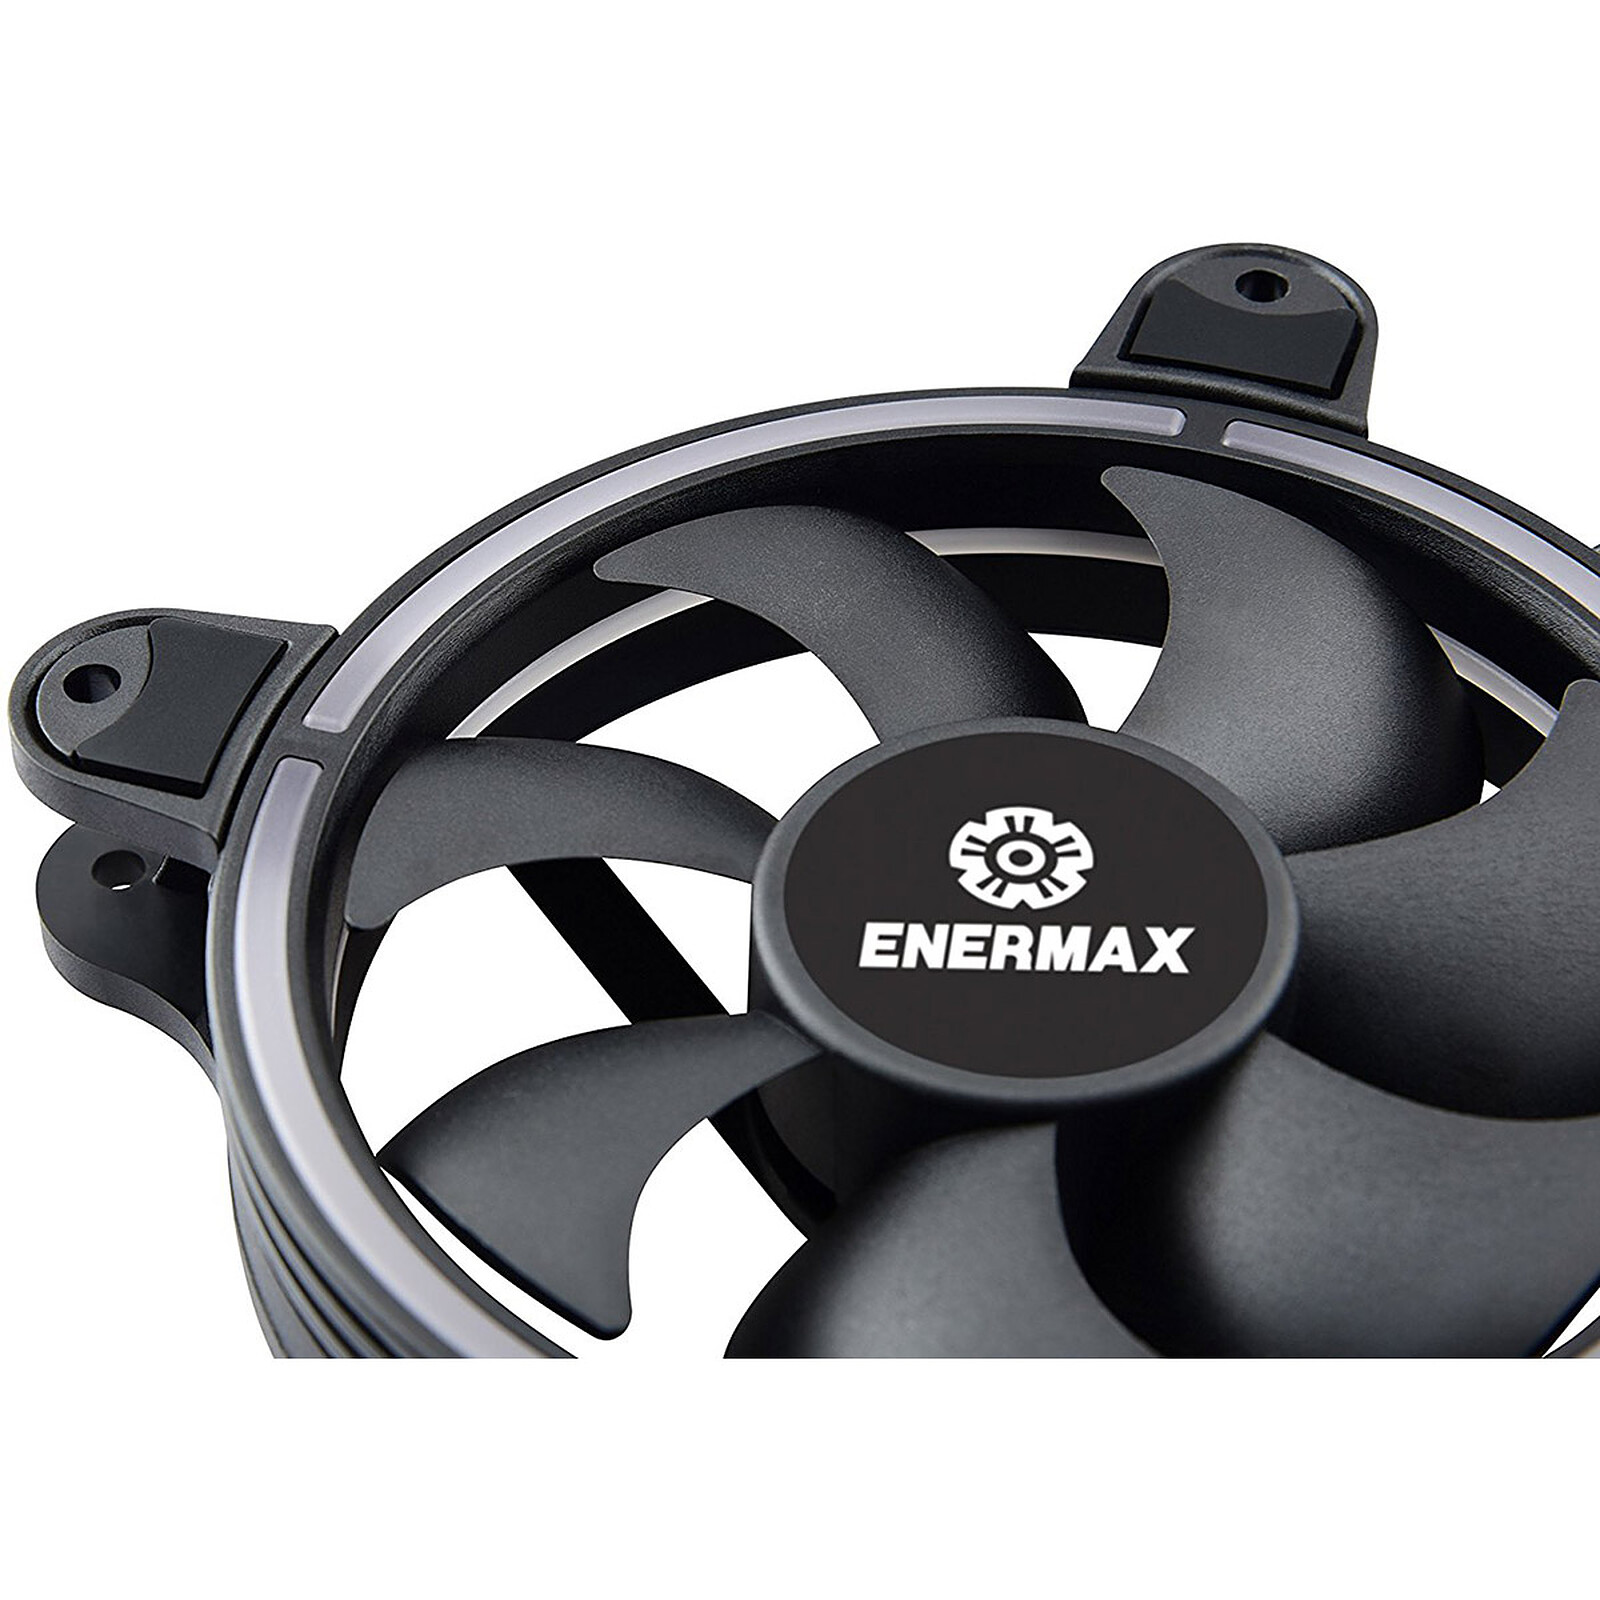 Enermax EAG001 Noir - Grille ventilateur PC - Garantie 3 ans LDLC